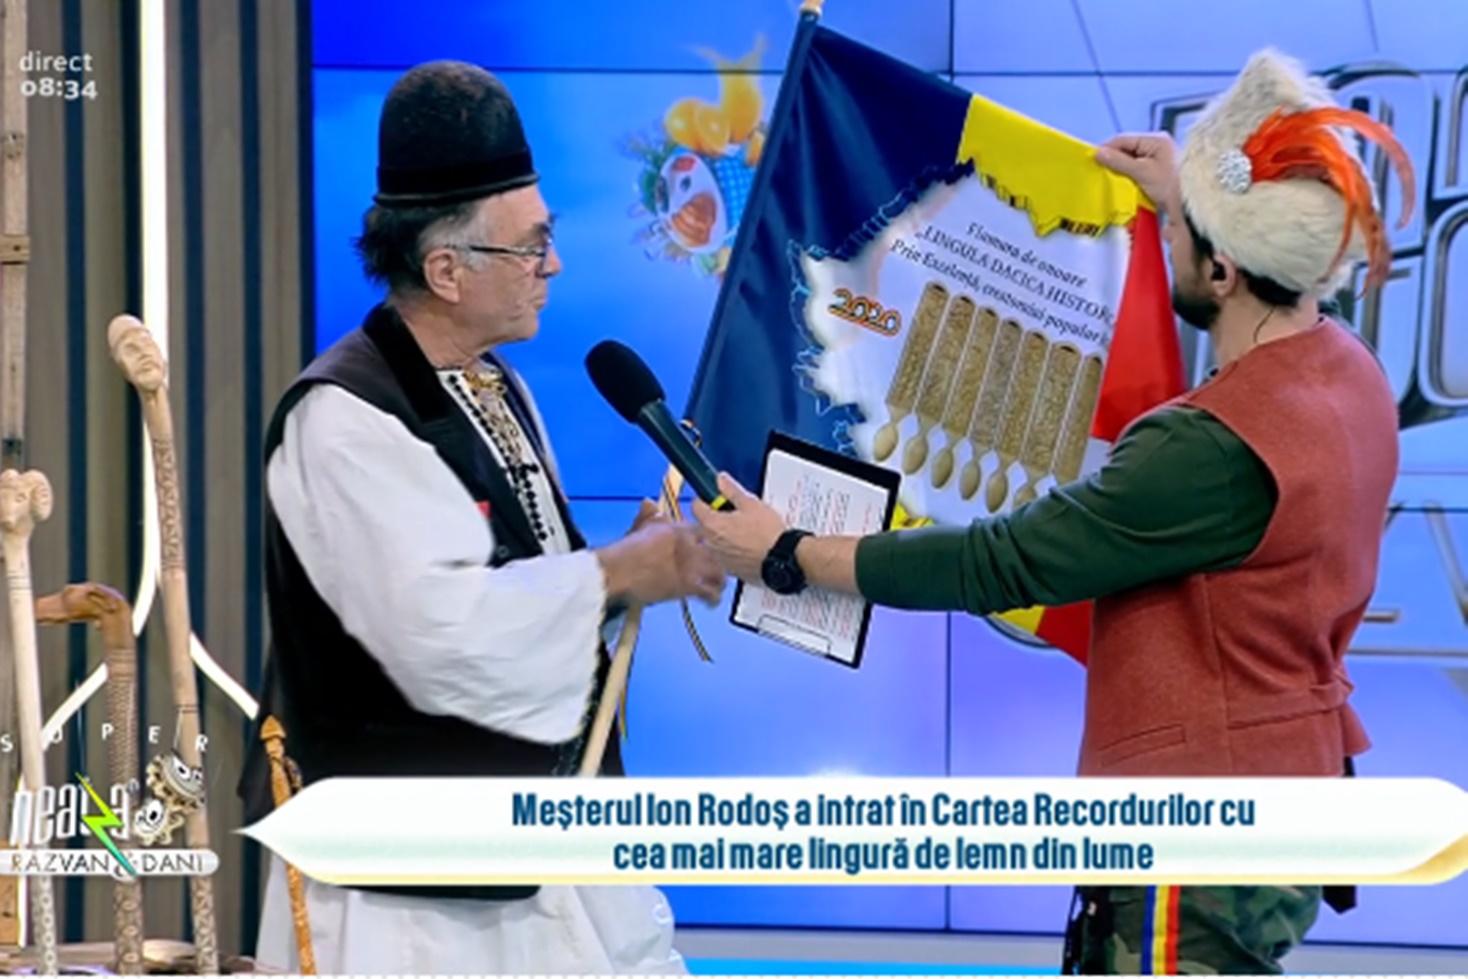 Români cu care ne mândrim în Cartea Recordurilor. Meșterul Ion Rodoș a realizat cea mai mare lingură de lemn din lume